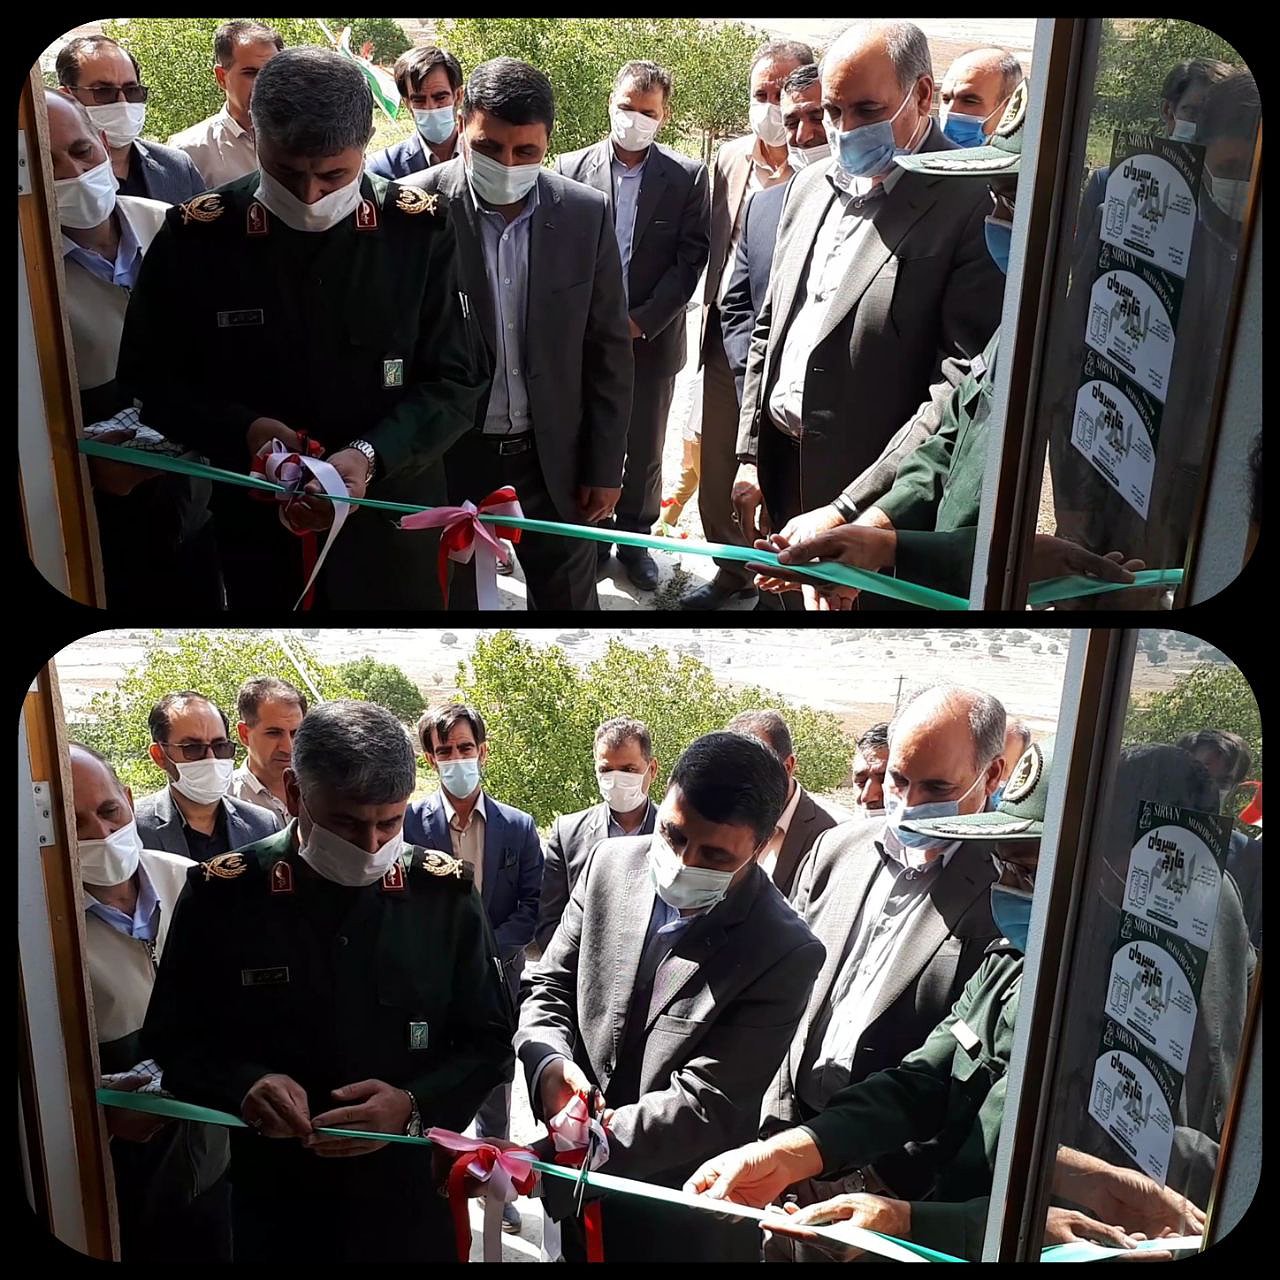 افتتاح مجتمع تولیدے قارچ سیروان(سراب)، از برنامه هاے دفاع مقدس در شهرستان ایوان